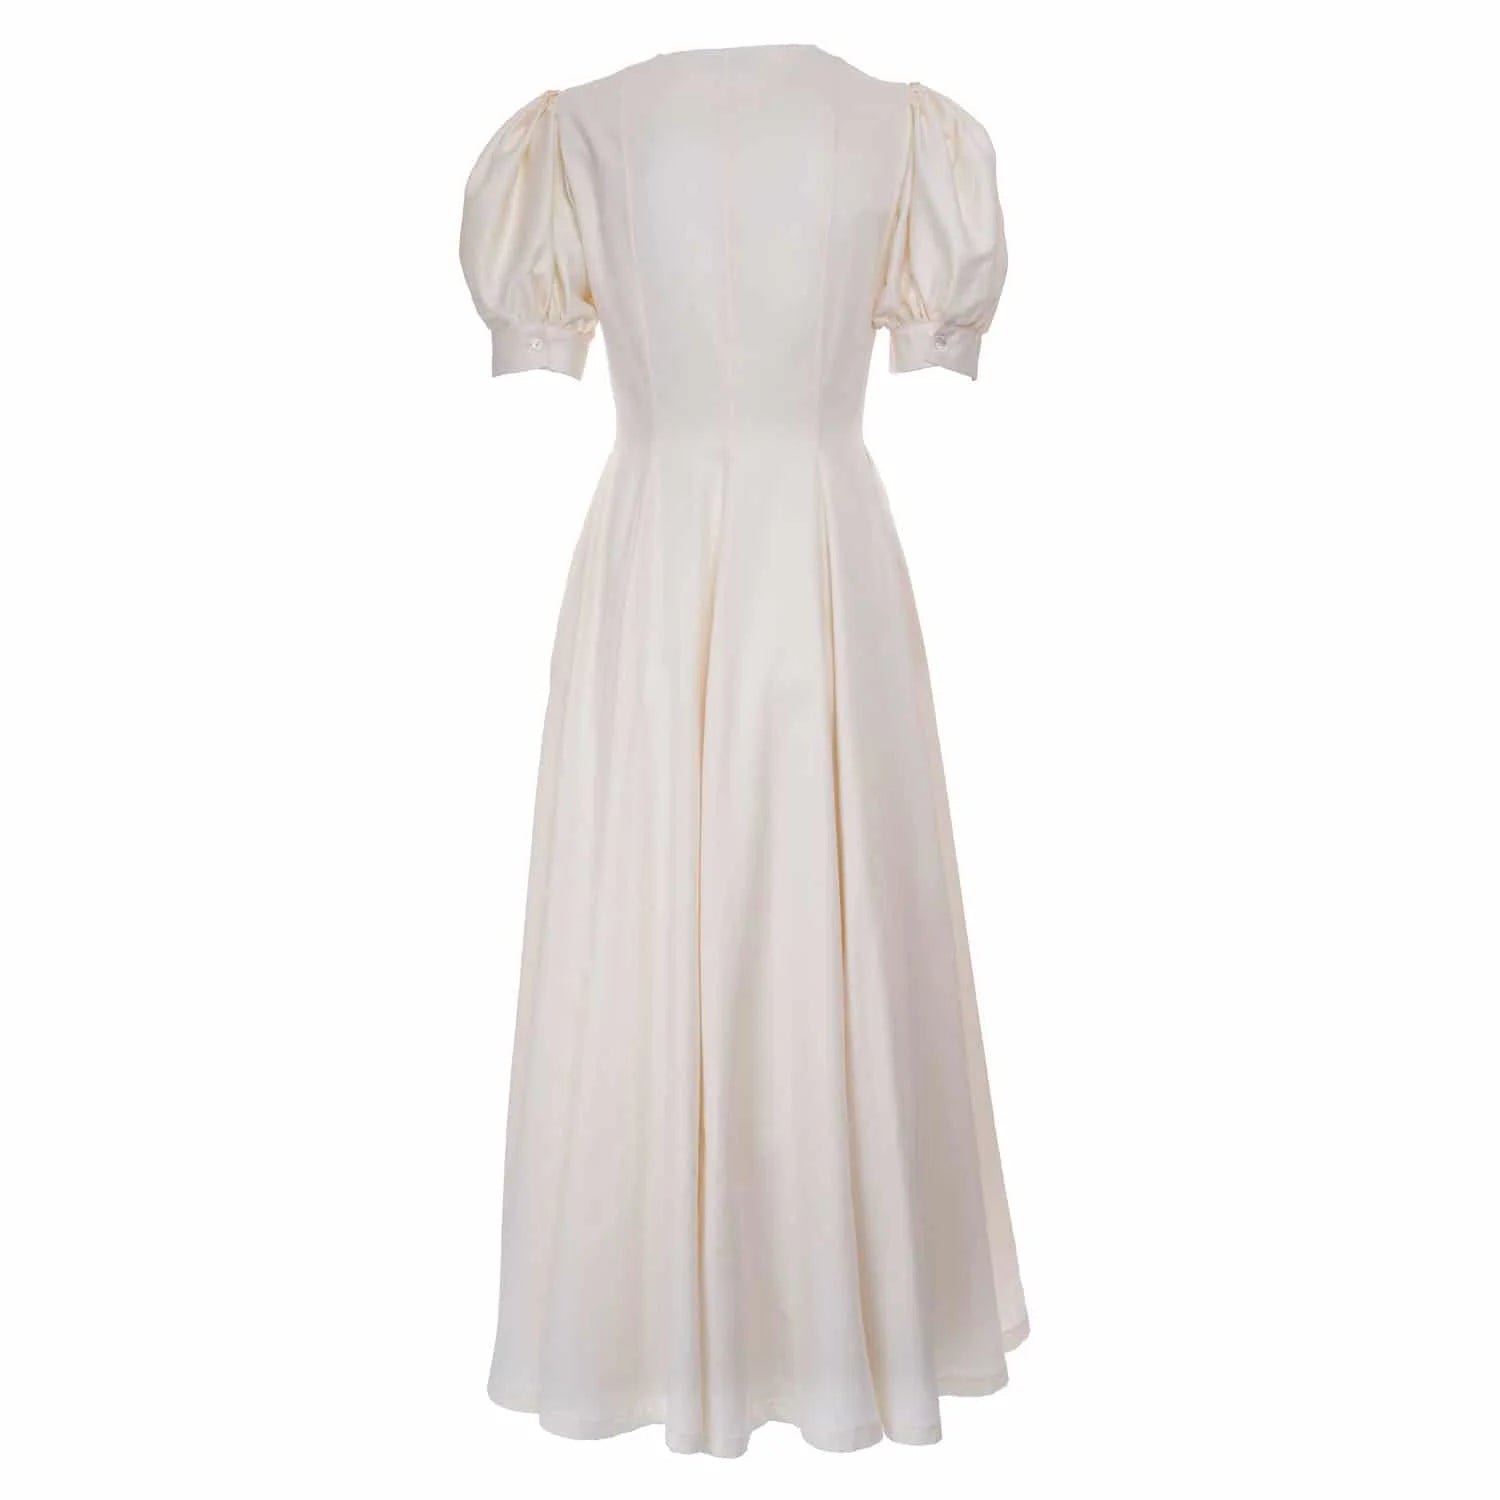 White cotton dress - Dress